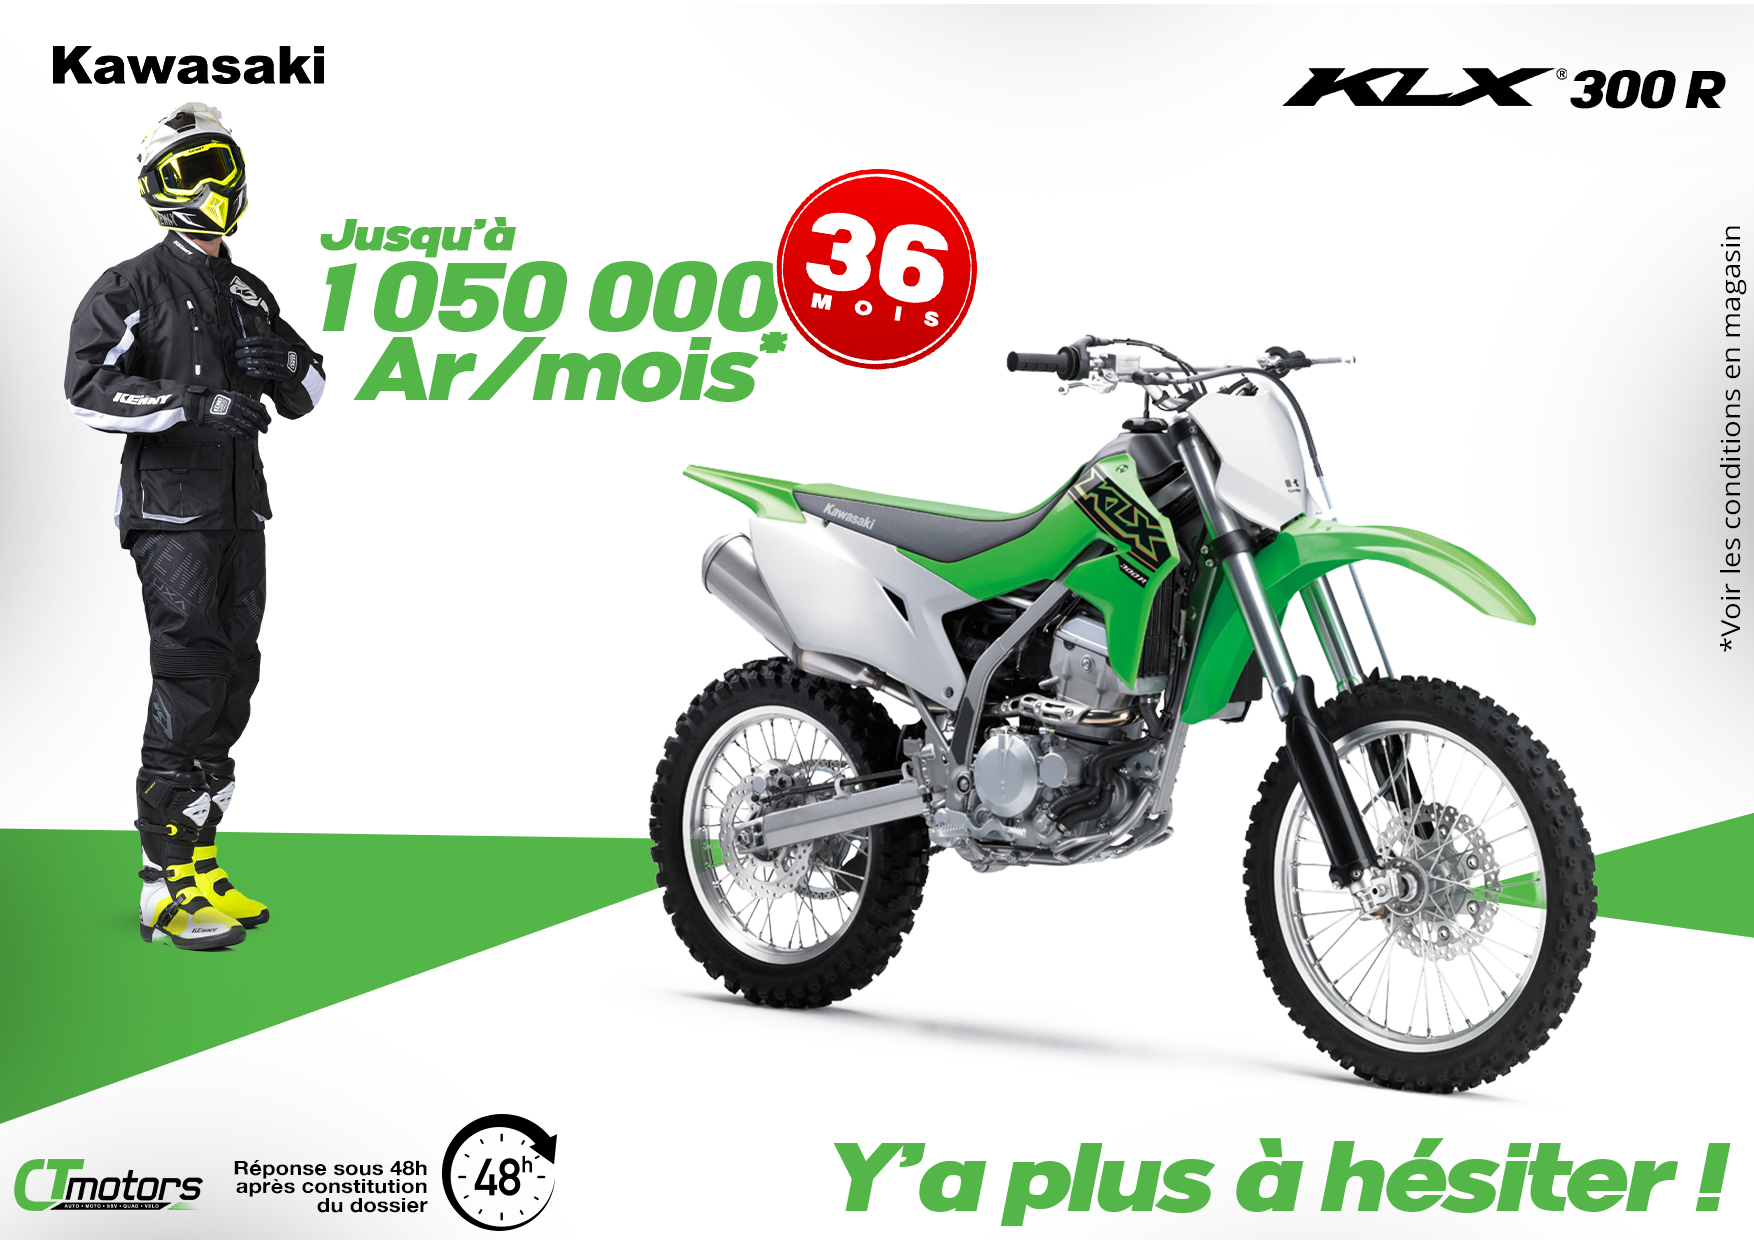 Kawasaki KLX 300